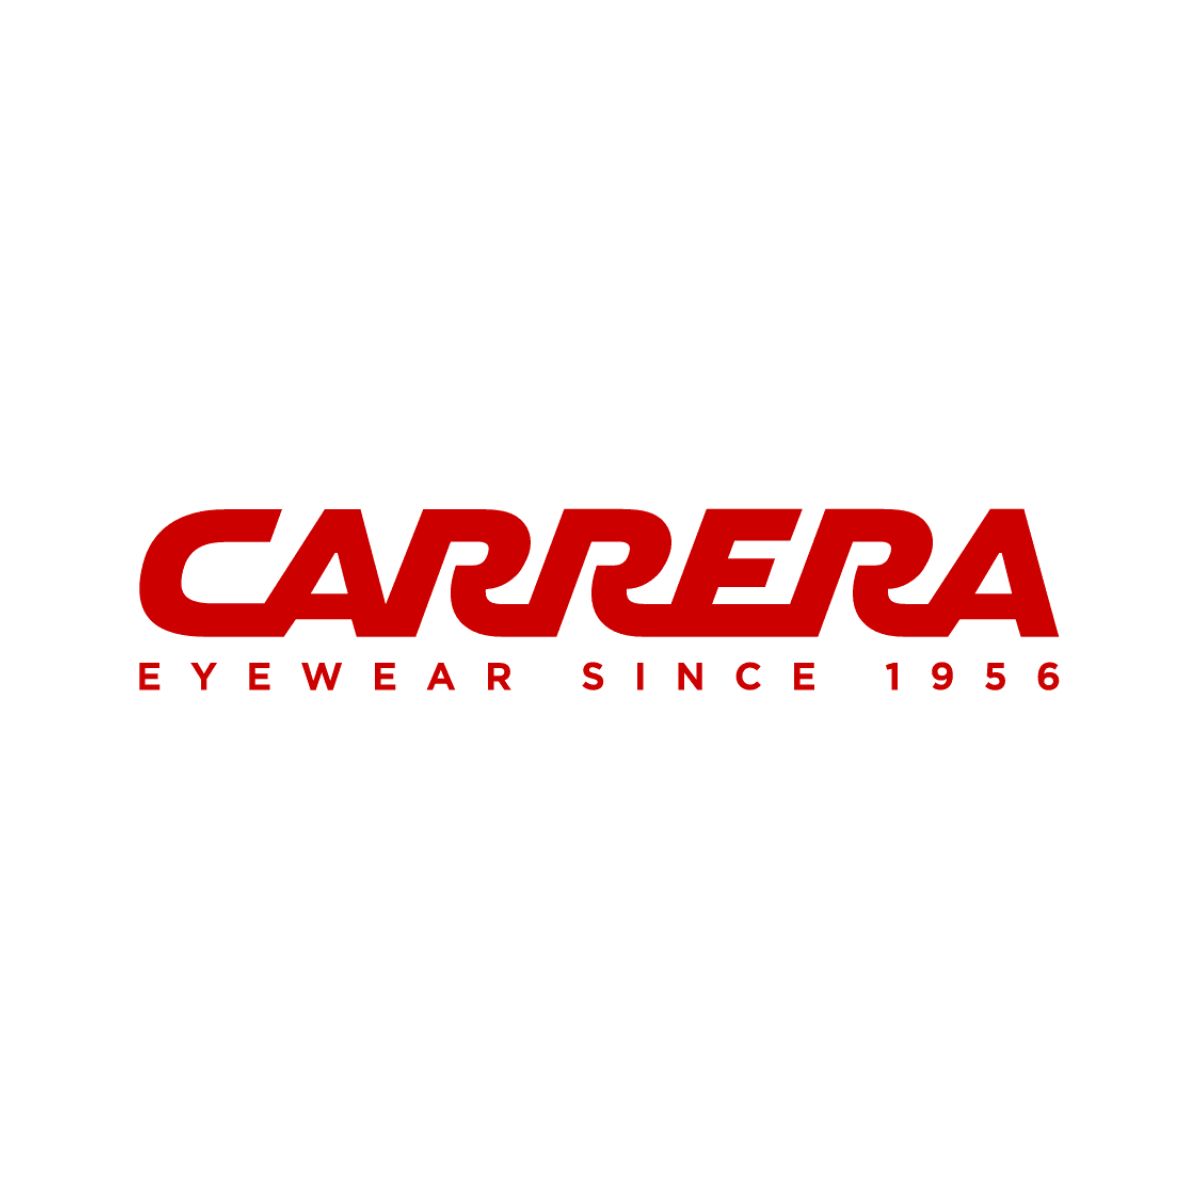 "Carrera eyewear brands sunglasses & optical frames and lenses at optorium"